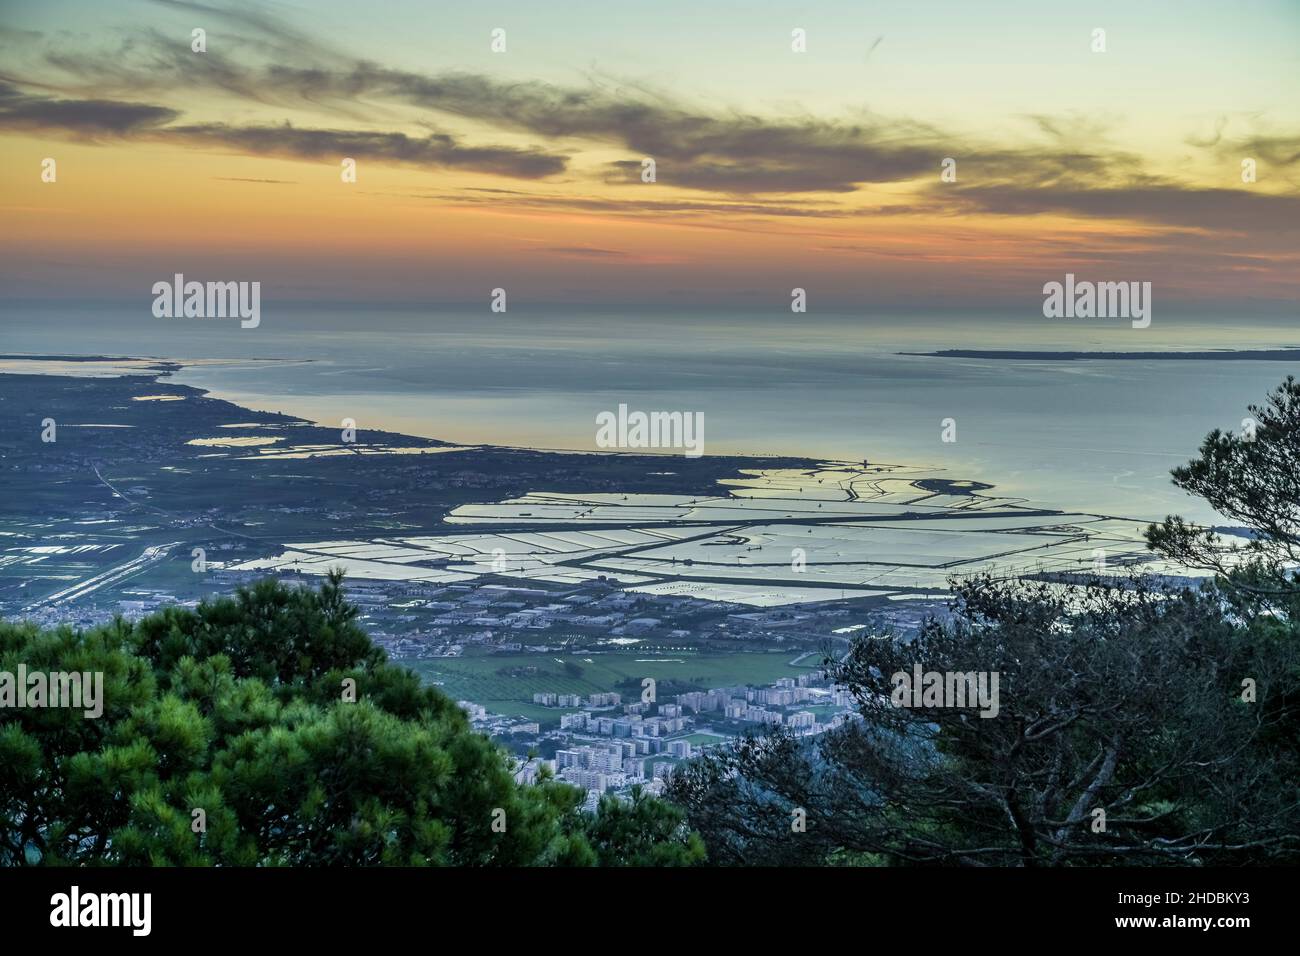 Panorama-Ansicht Salzfelder von Trapani, Sicilien, Italie Banque D'Images